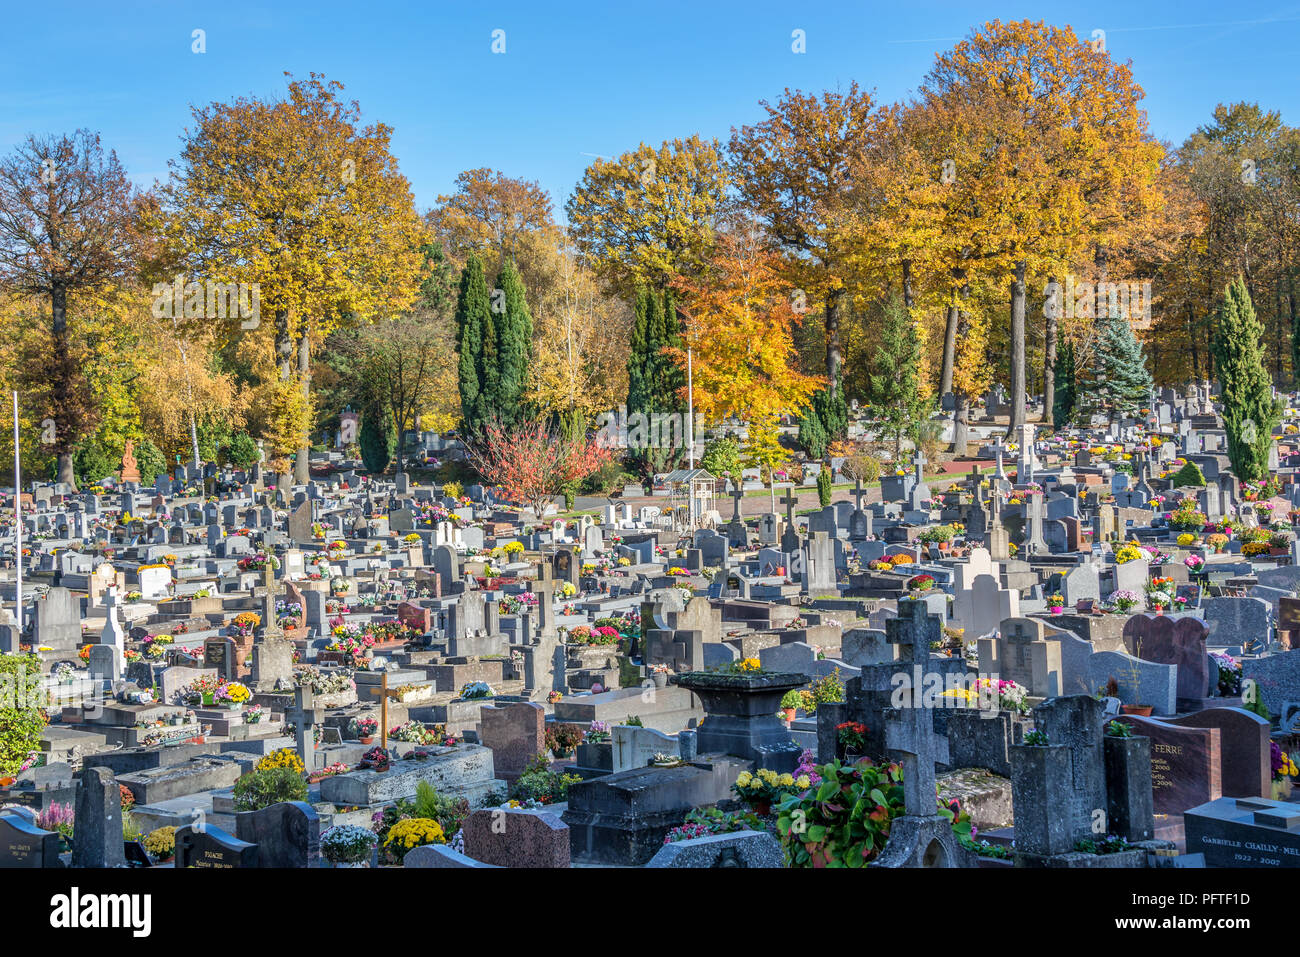 CHAVILLE, Frankreich - 14. NOVEMBER: Französische Friedhof im Herbst, 2 Wochen nach der Feier der Toussaint (Allerheiligen) Stockfoto